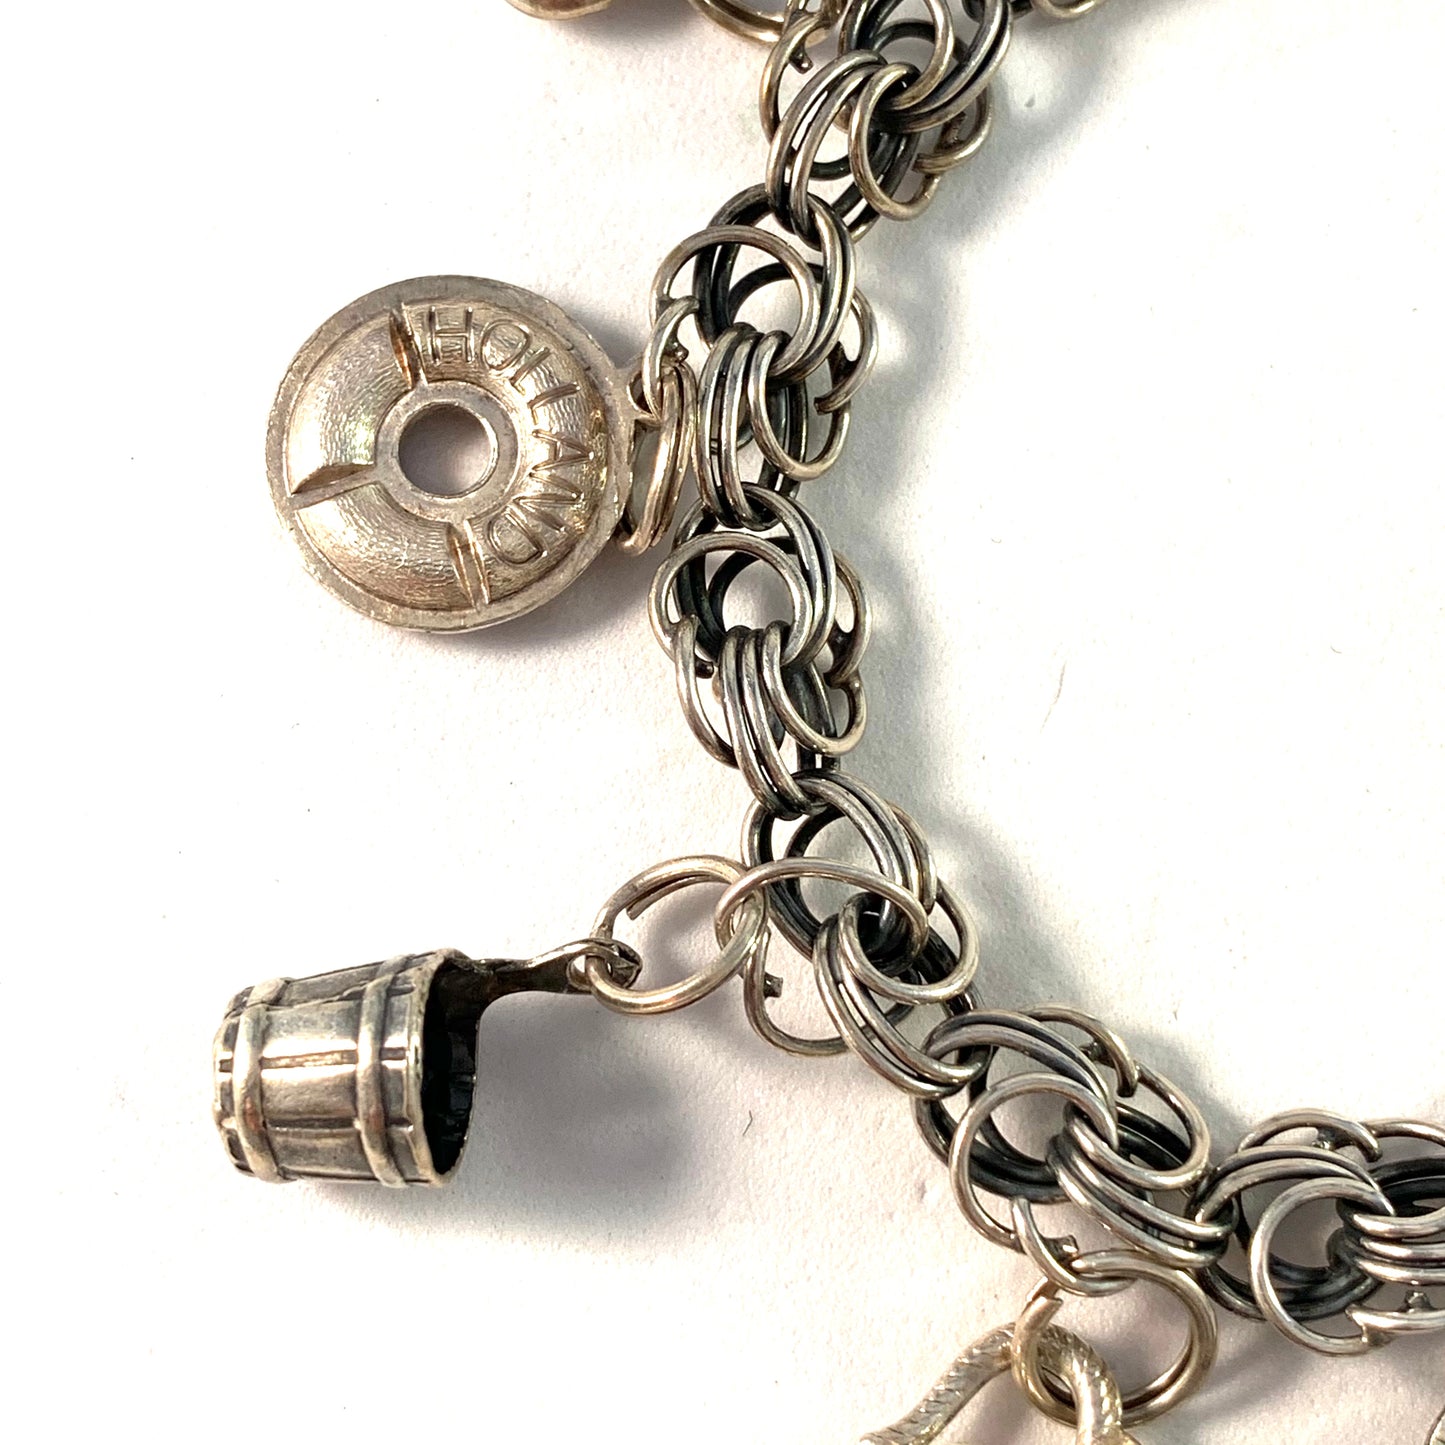 Einari Ailio, Finland Vintage 1960s Solid Silver Charm Bracelet.